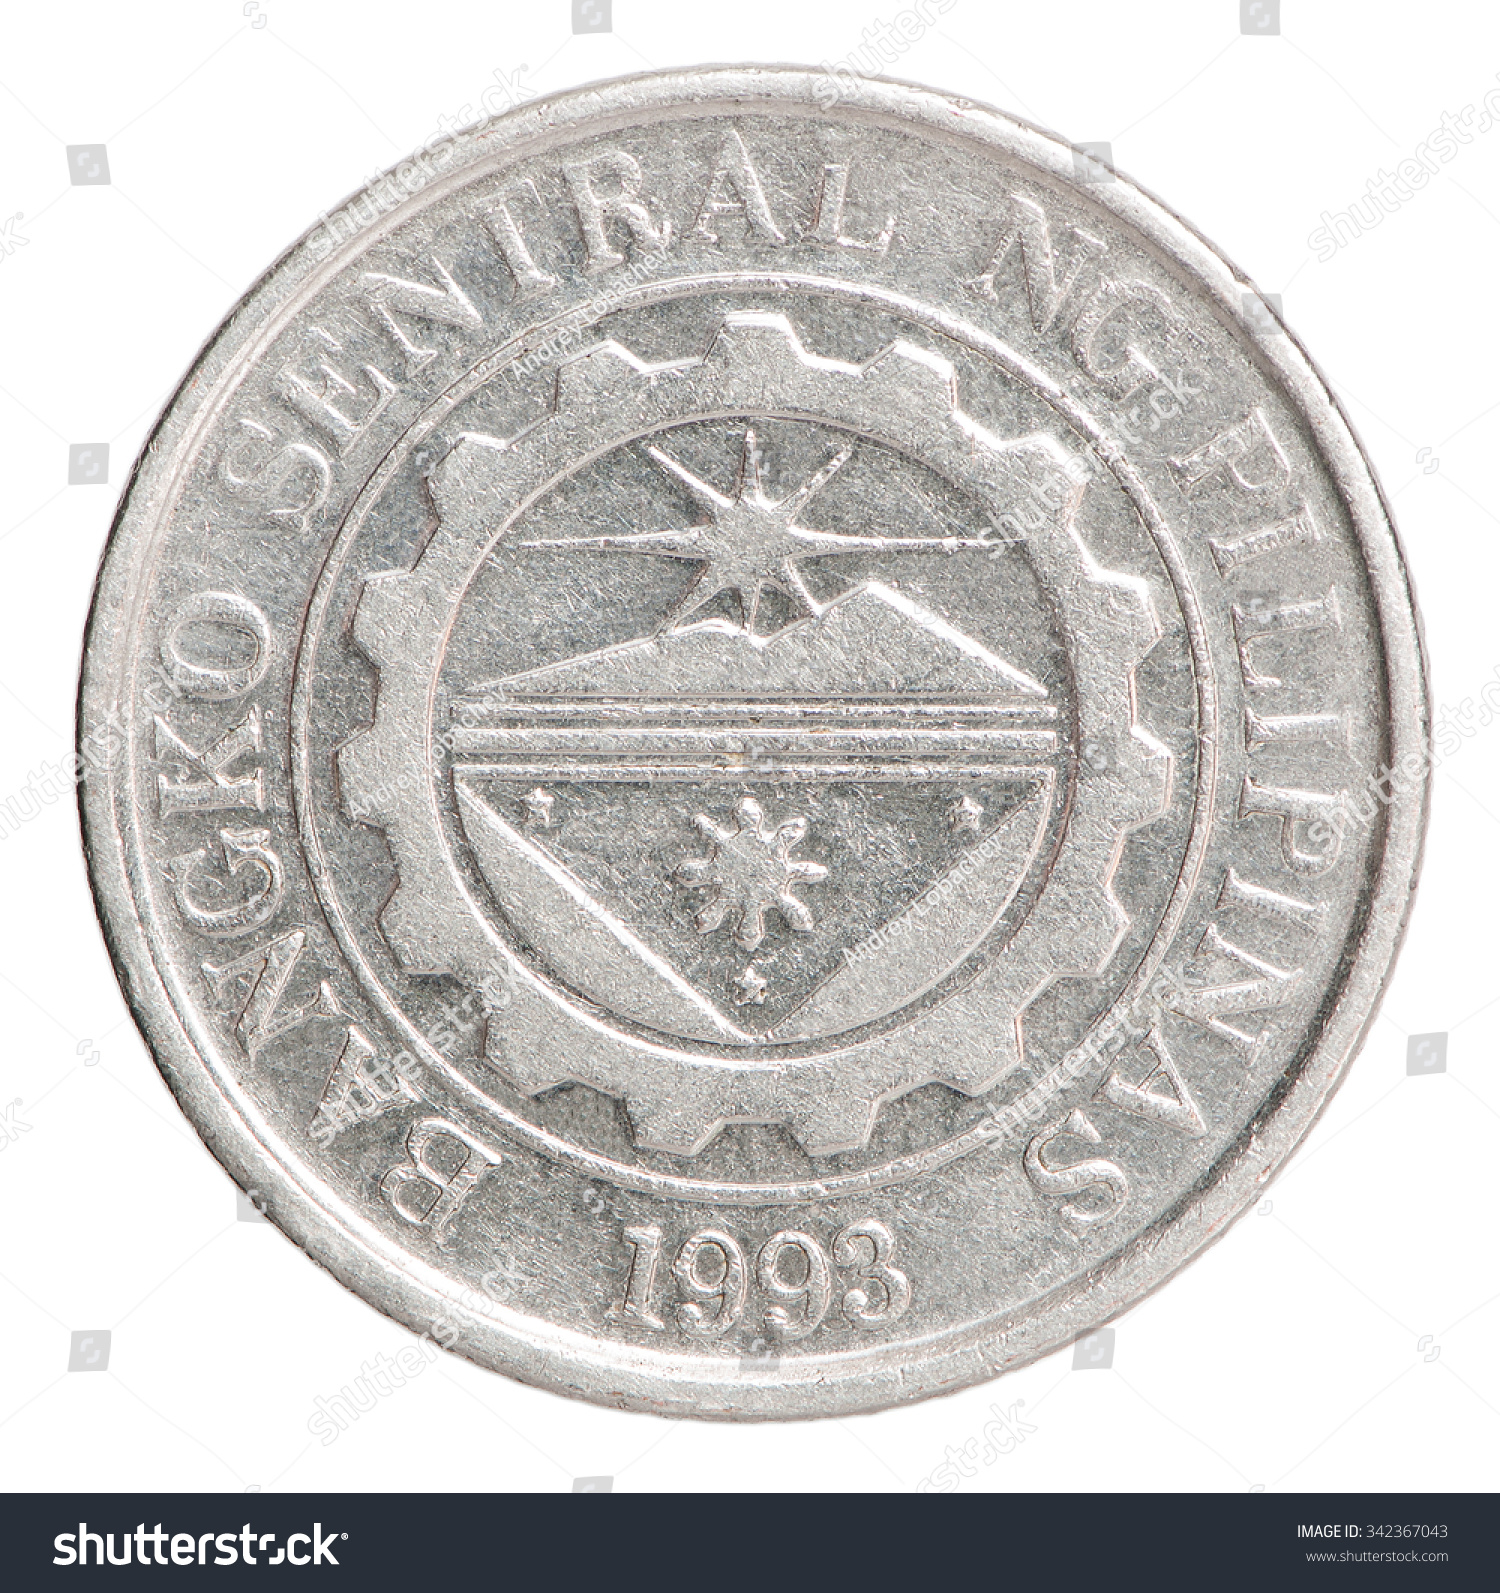 Philippine Peso 1 Silver Coin Closeup Stock Photo 342367043 ...